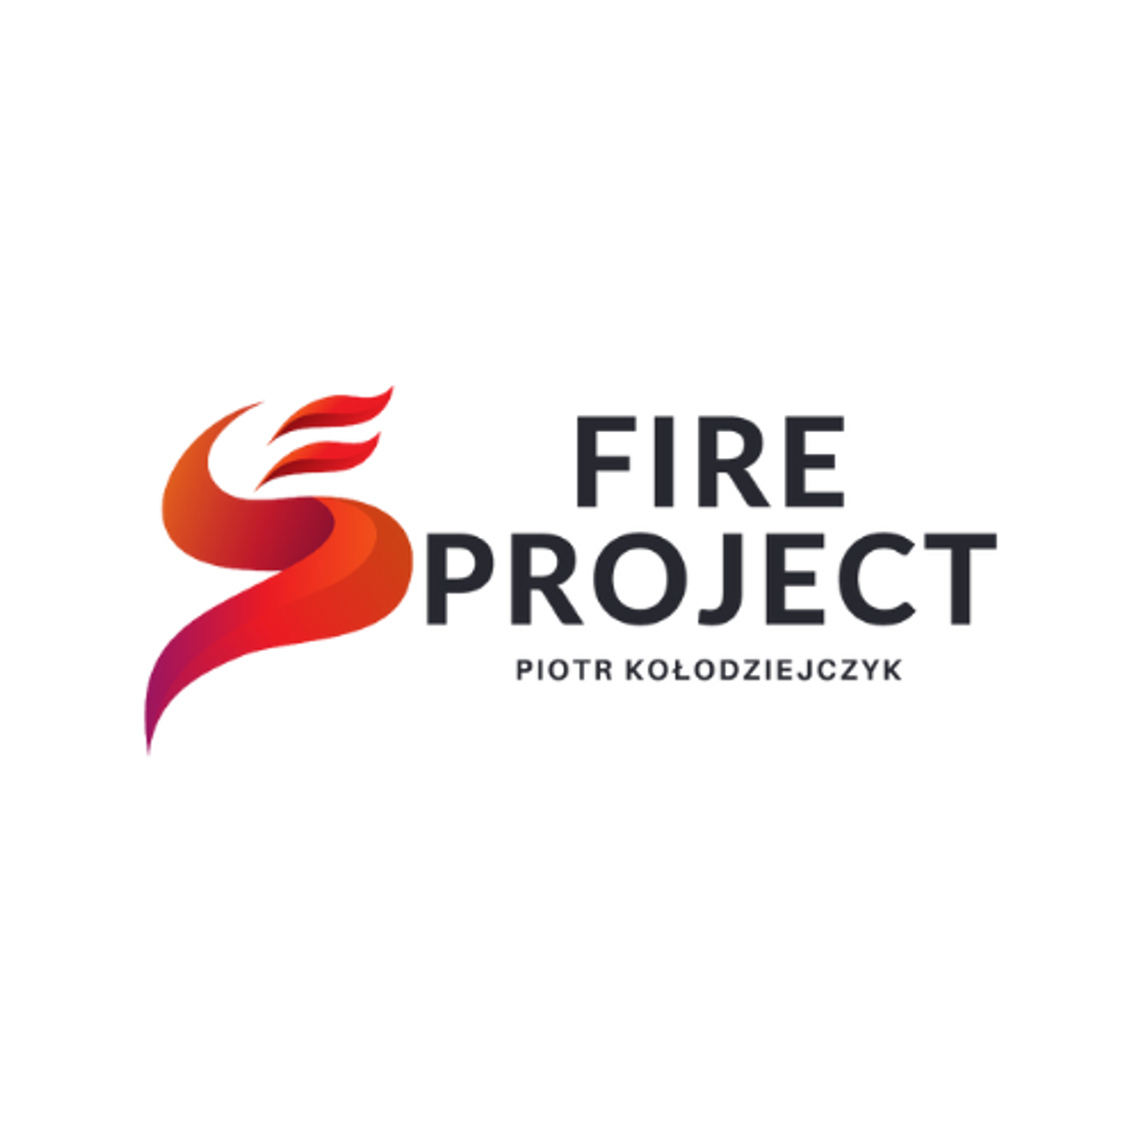 Fire Project - ochrona przeciwpożarowa